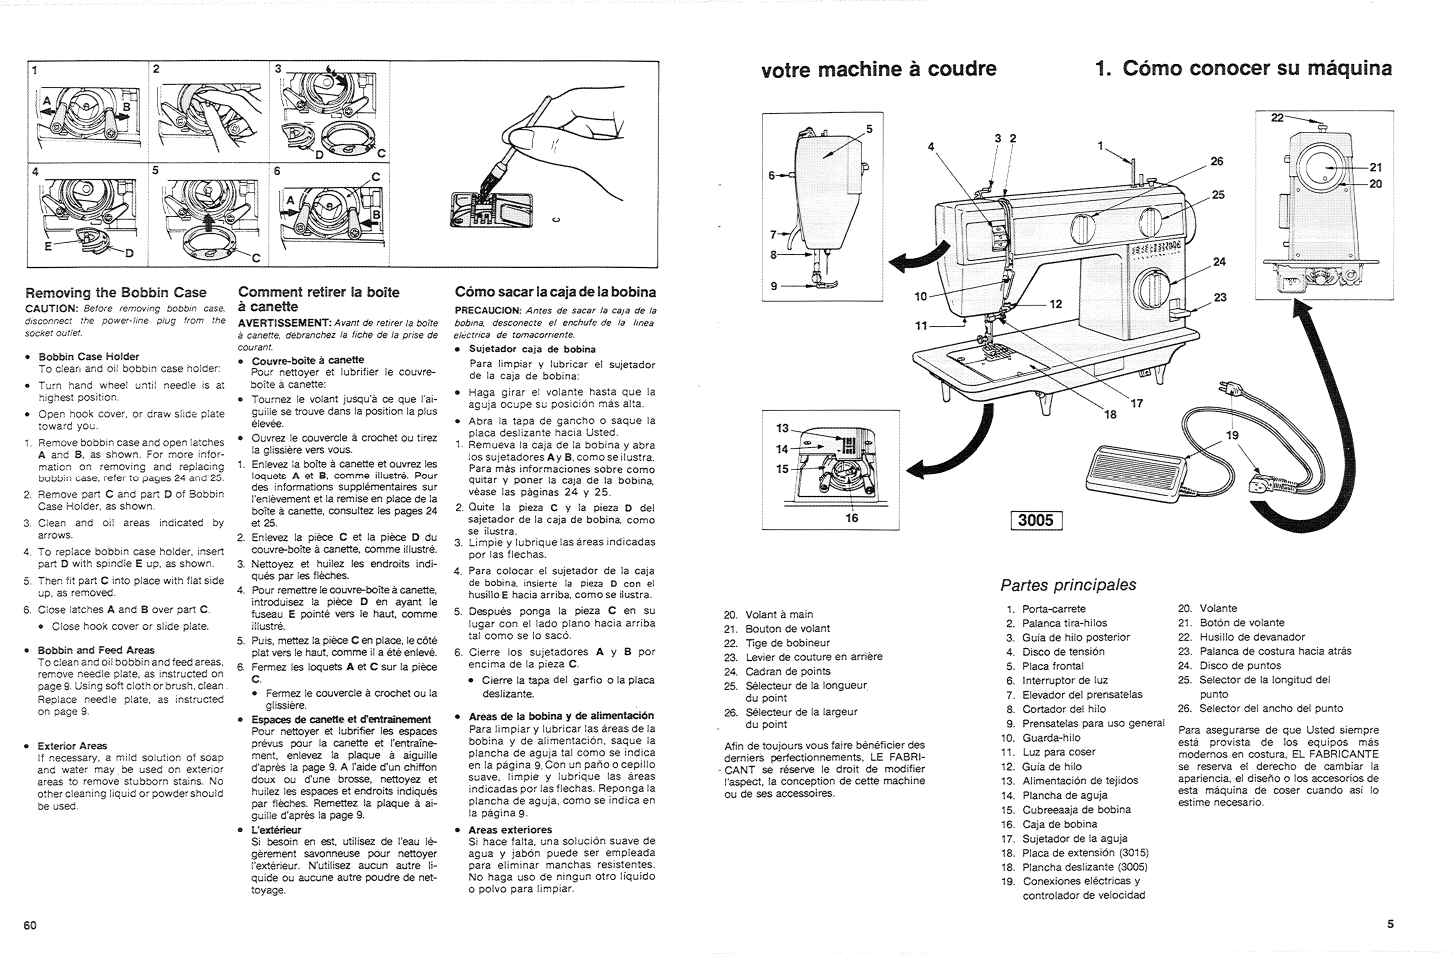 Cómo conocer su máquina, Partes principales, Votre machifie à coudre 1. cómo conocer su máquina | SINGER 3015 User Manual | Page 7 / 68